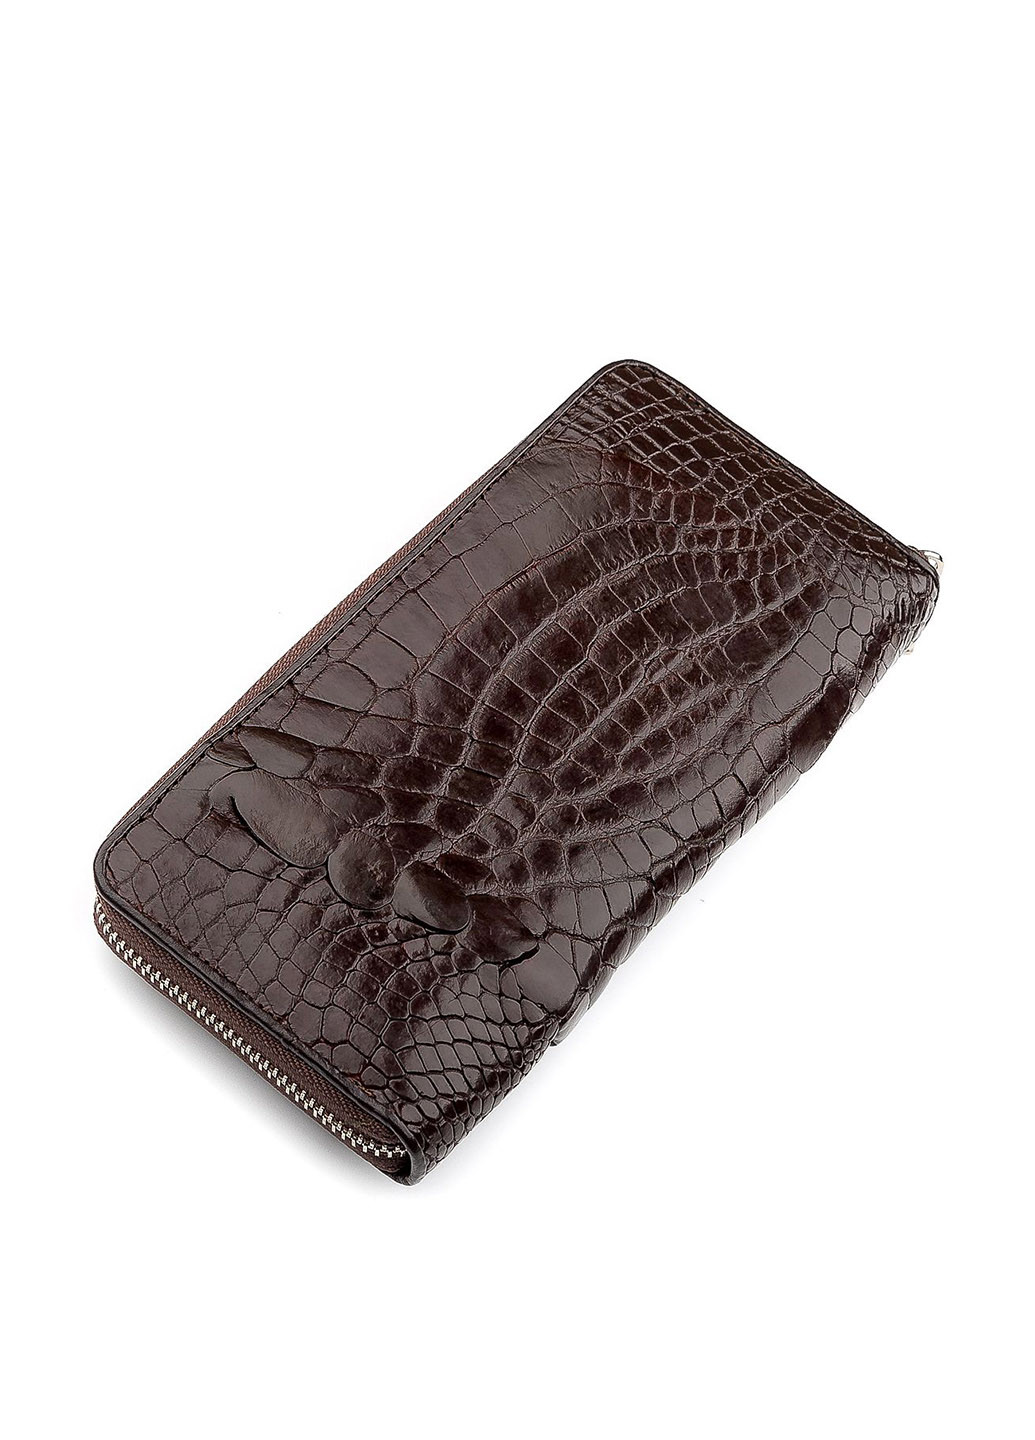 Гаманець Crocodile leather коричневий кежуал